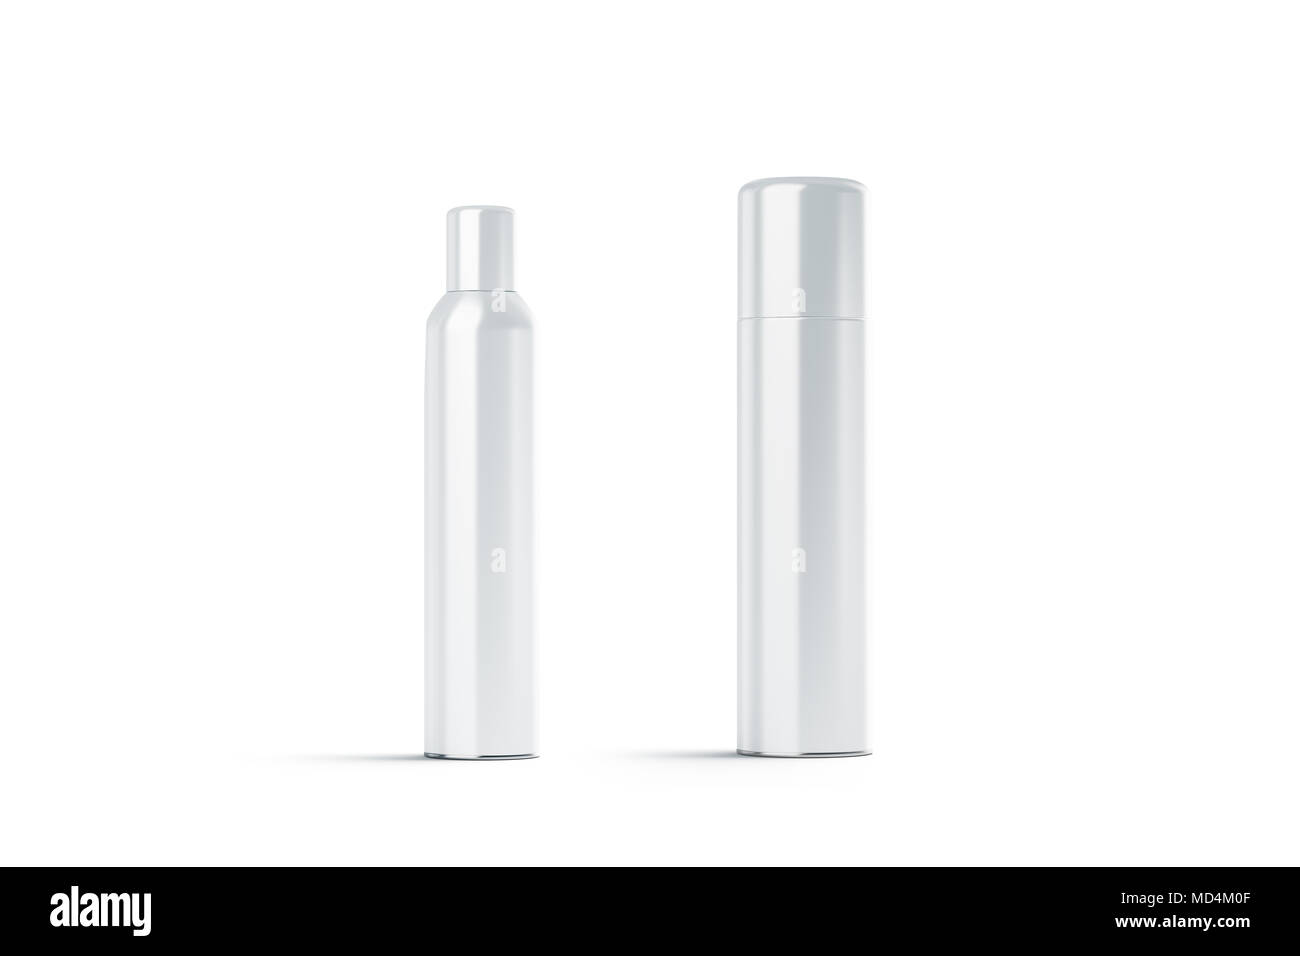 Vuoto in plastica bianco chiuso hairspray bottiglia mockups, rendering 3d. Vuoto aerosol deodorante mock up isolato. Cancellare inossidabile modello di contenitore Foto Stock